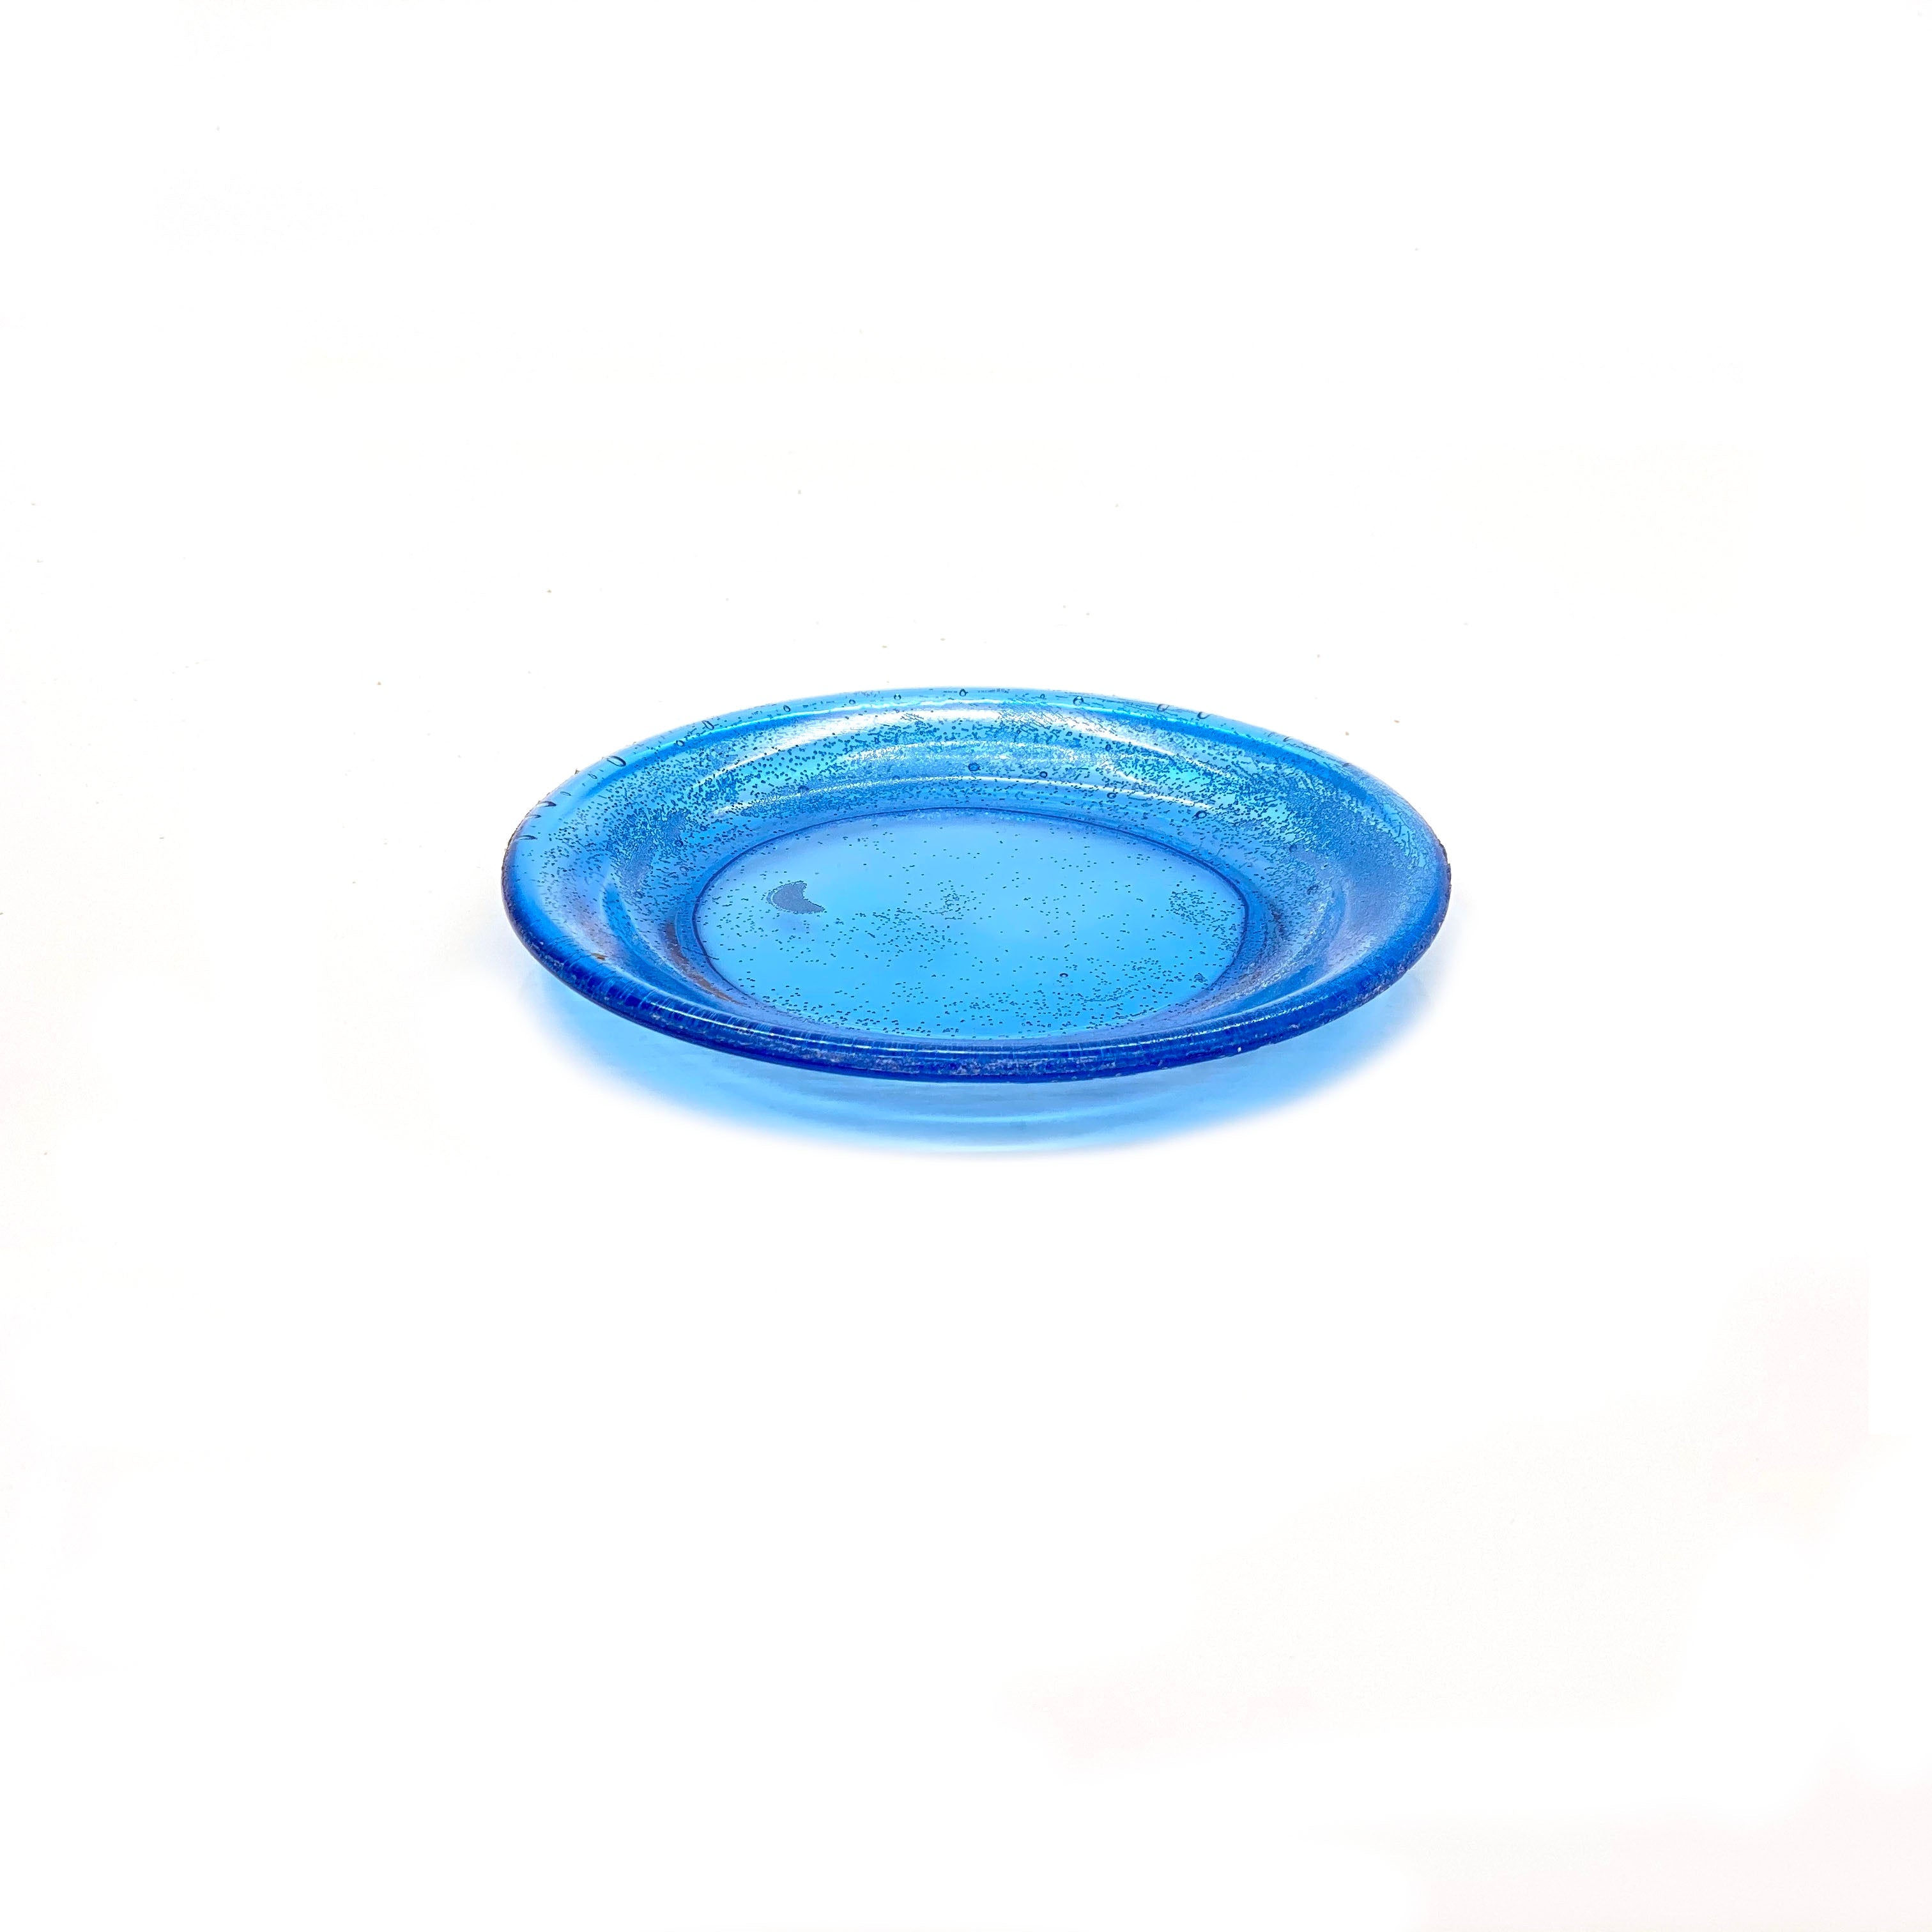 SMASHProps Breakaway Small Dinner Plate Prop - LIGHT BLUE translucent - Light Blue,Translucent